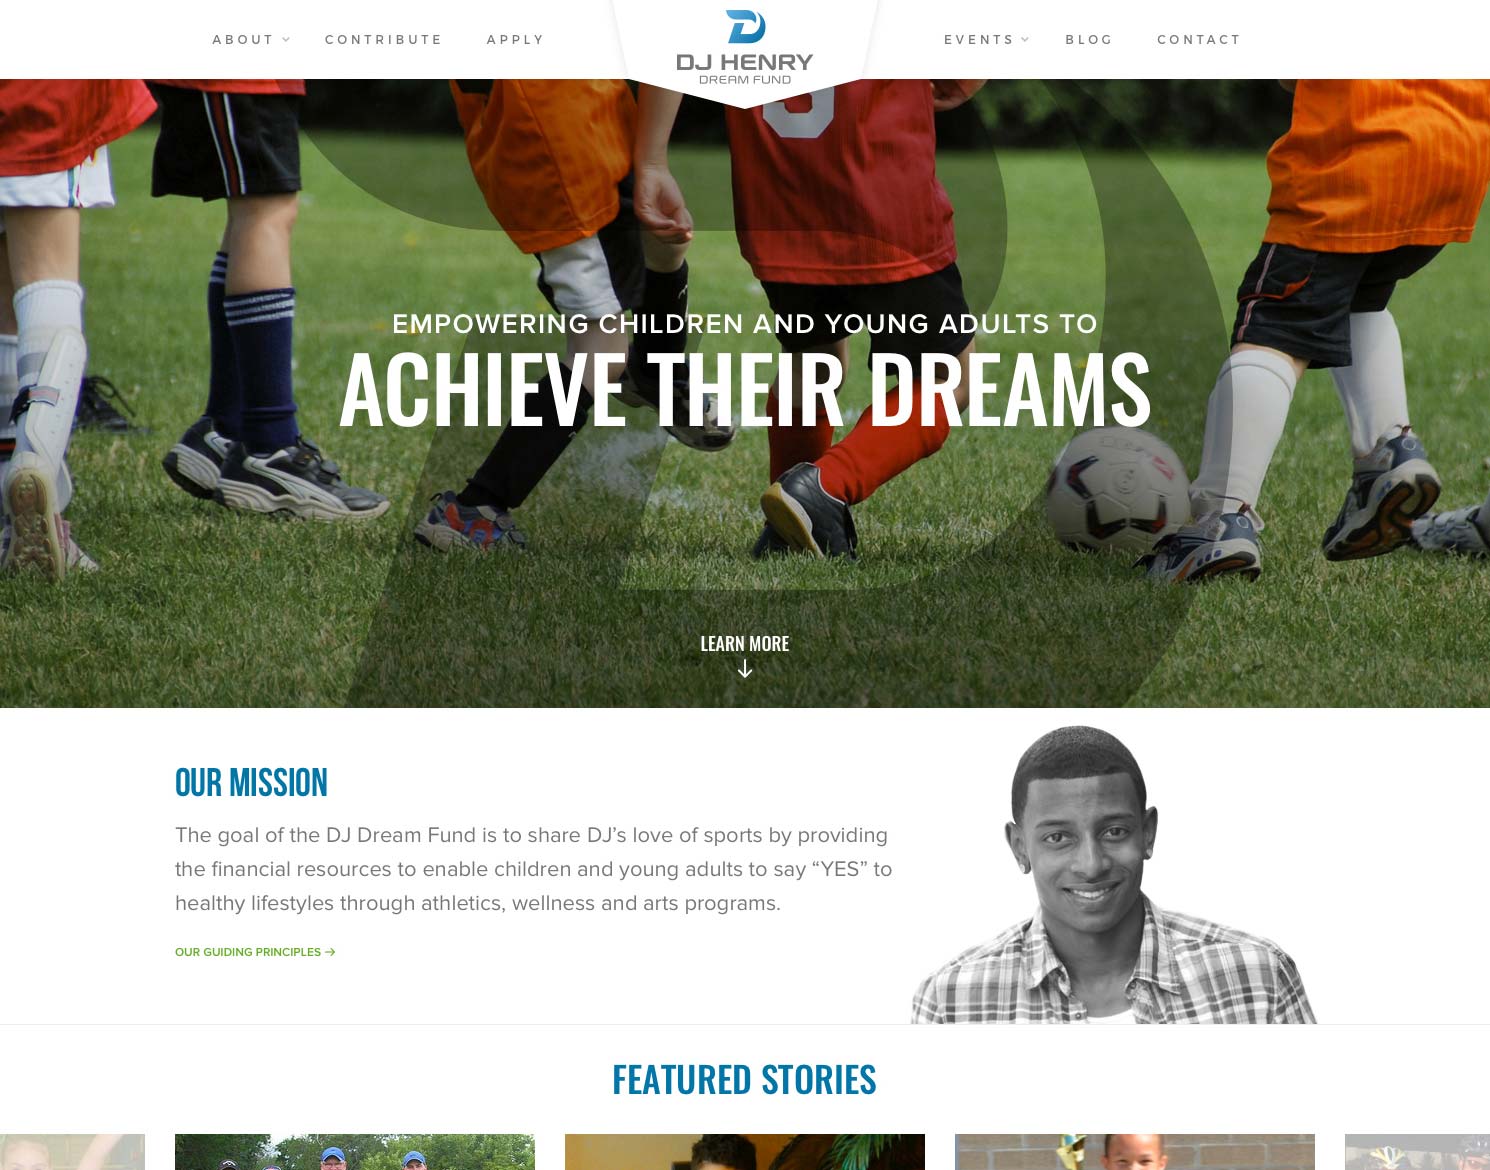 DJ Henry Dream Fund website design showing homepage